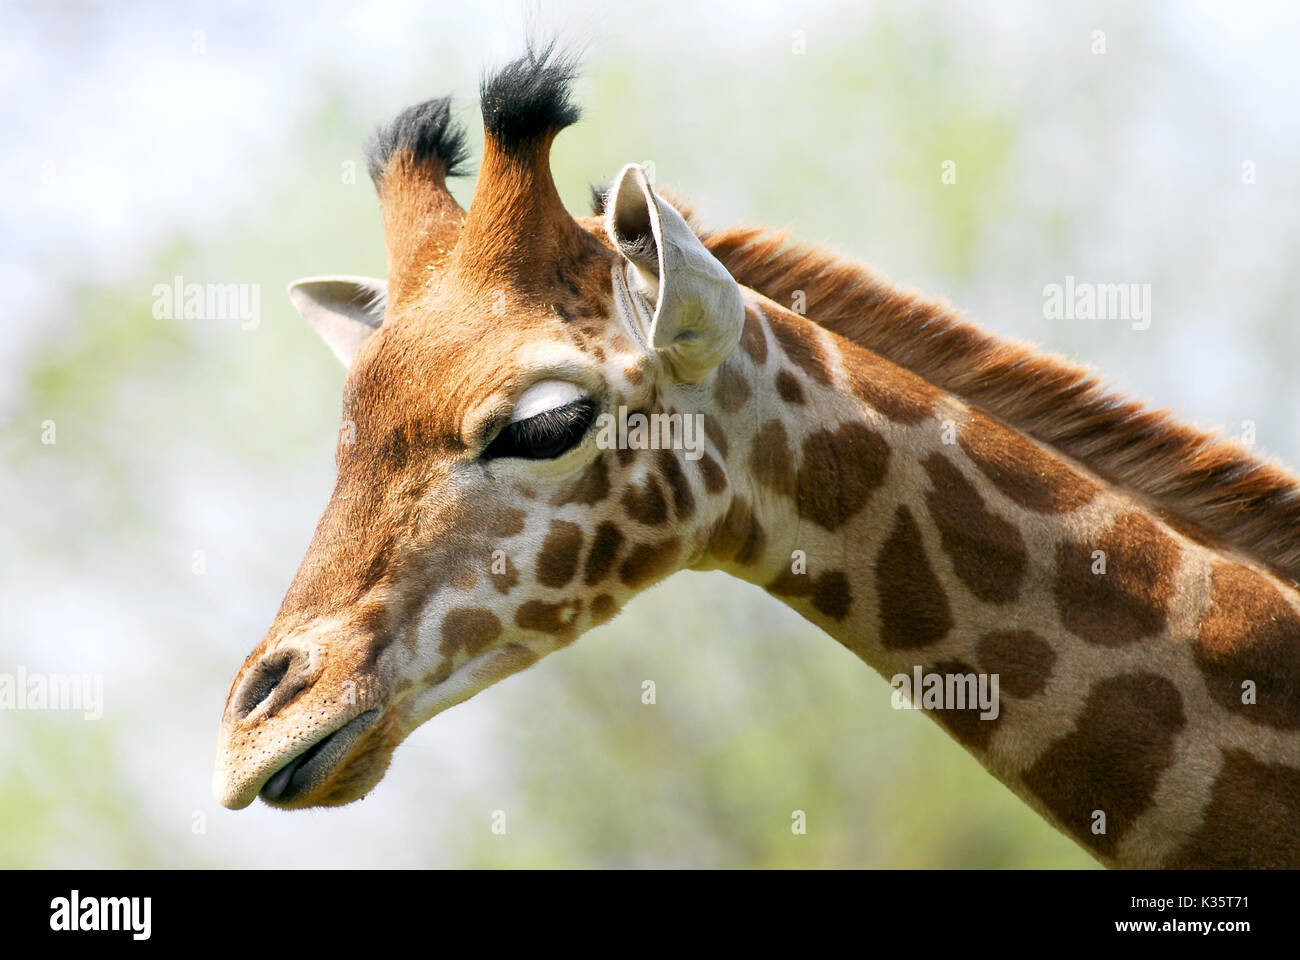 Profile portrait of giraffe (Giraffa camelopardalis) Stock Photo